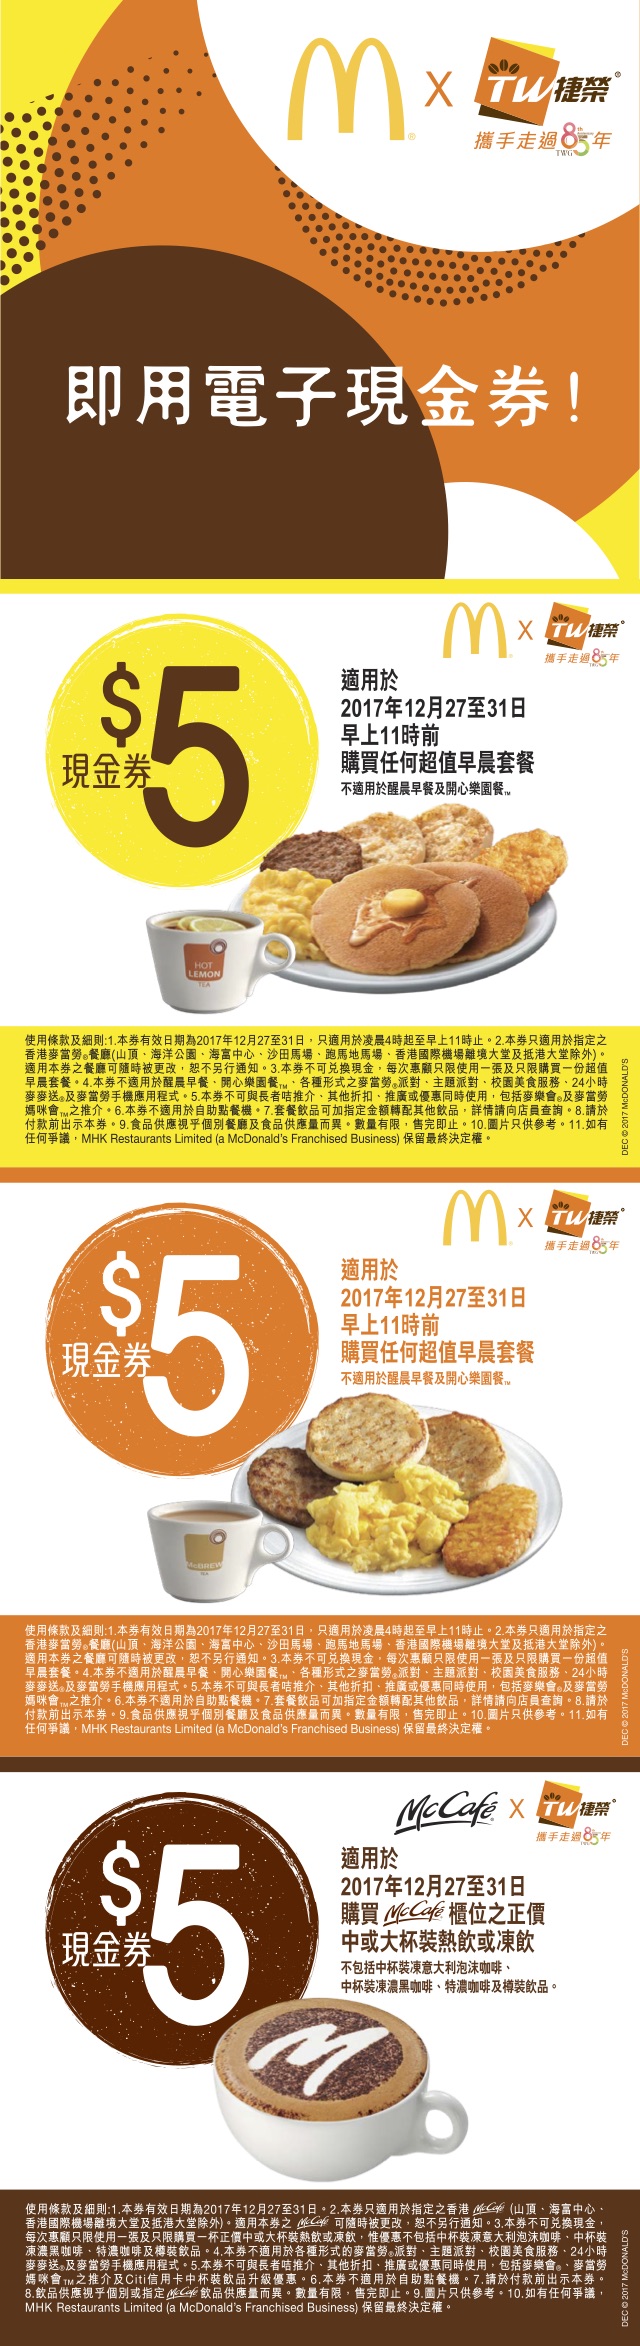 麥當勞早晨套餐、McCafe 現金券優惠(至17年12月31日)圖片1